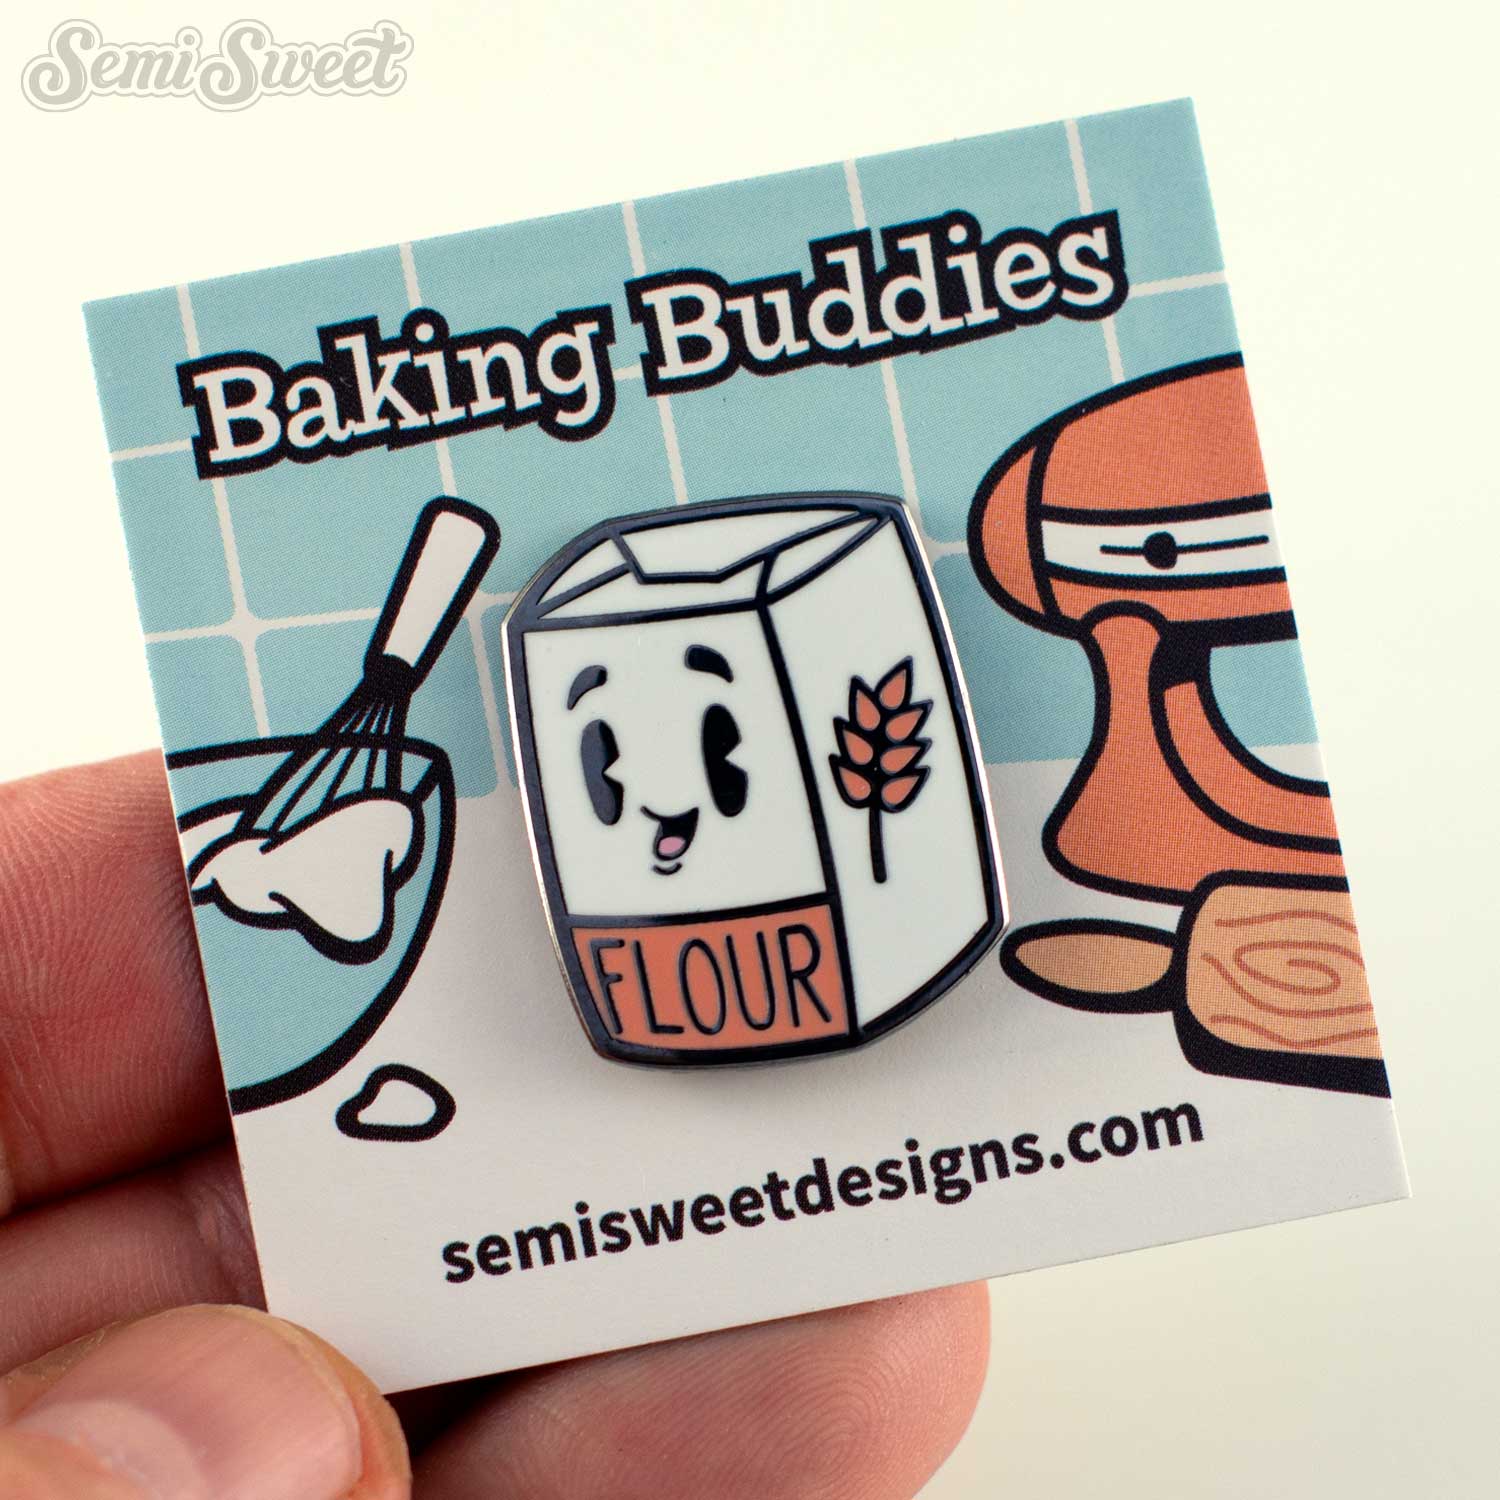 baking buddies flour enamel pin